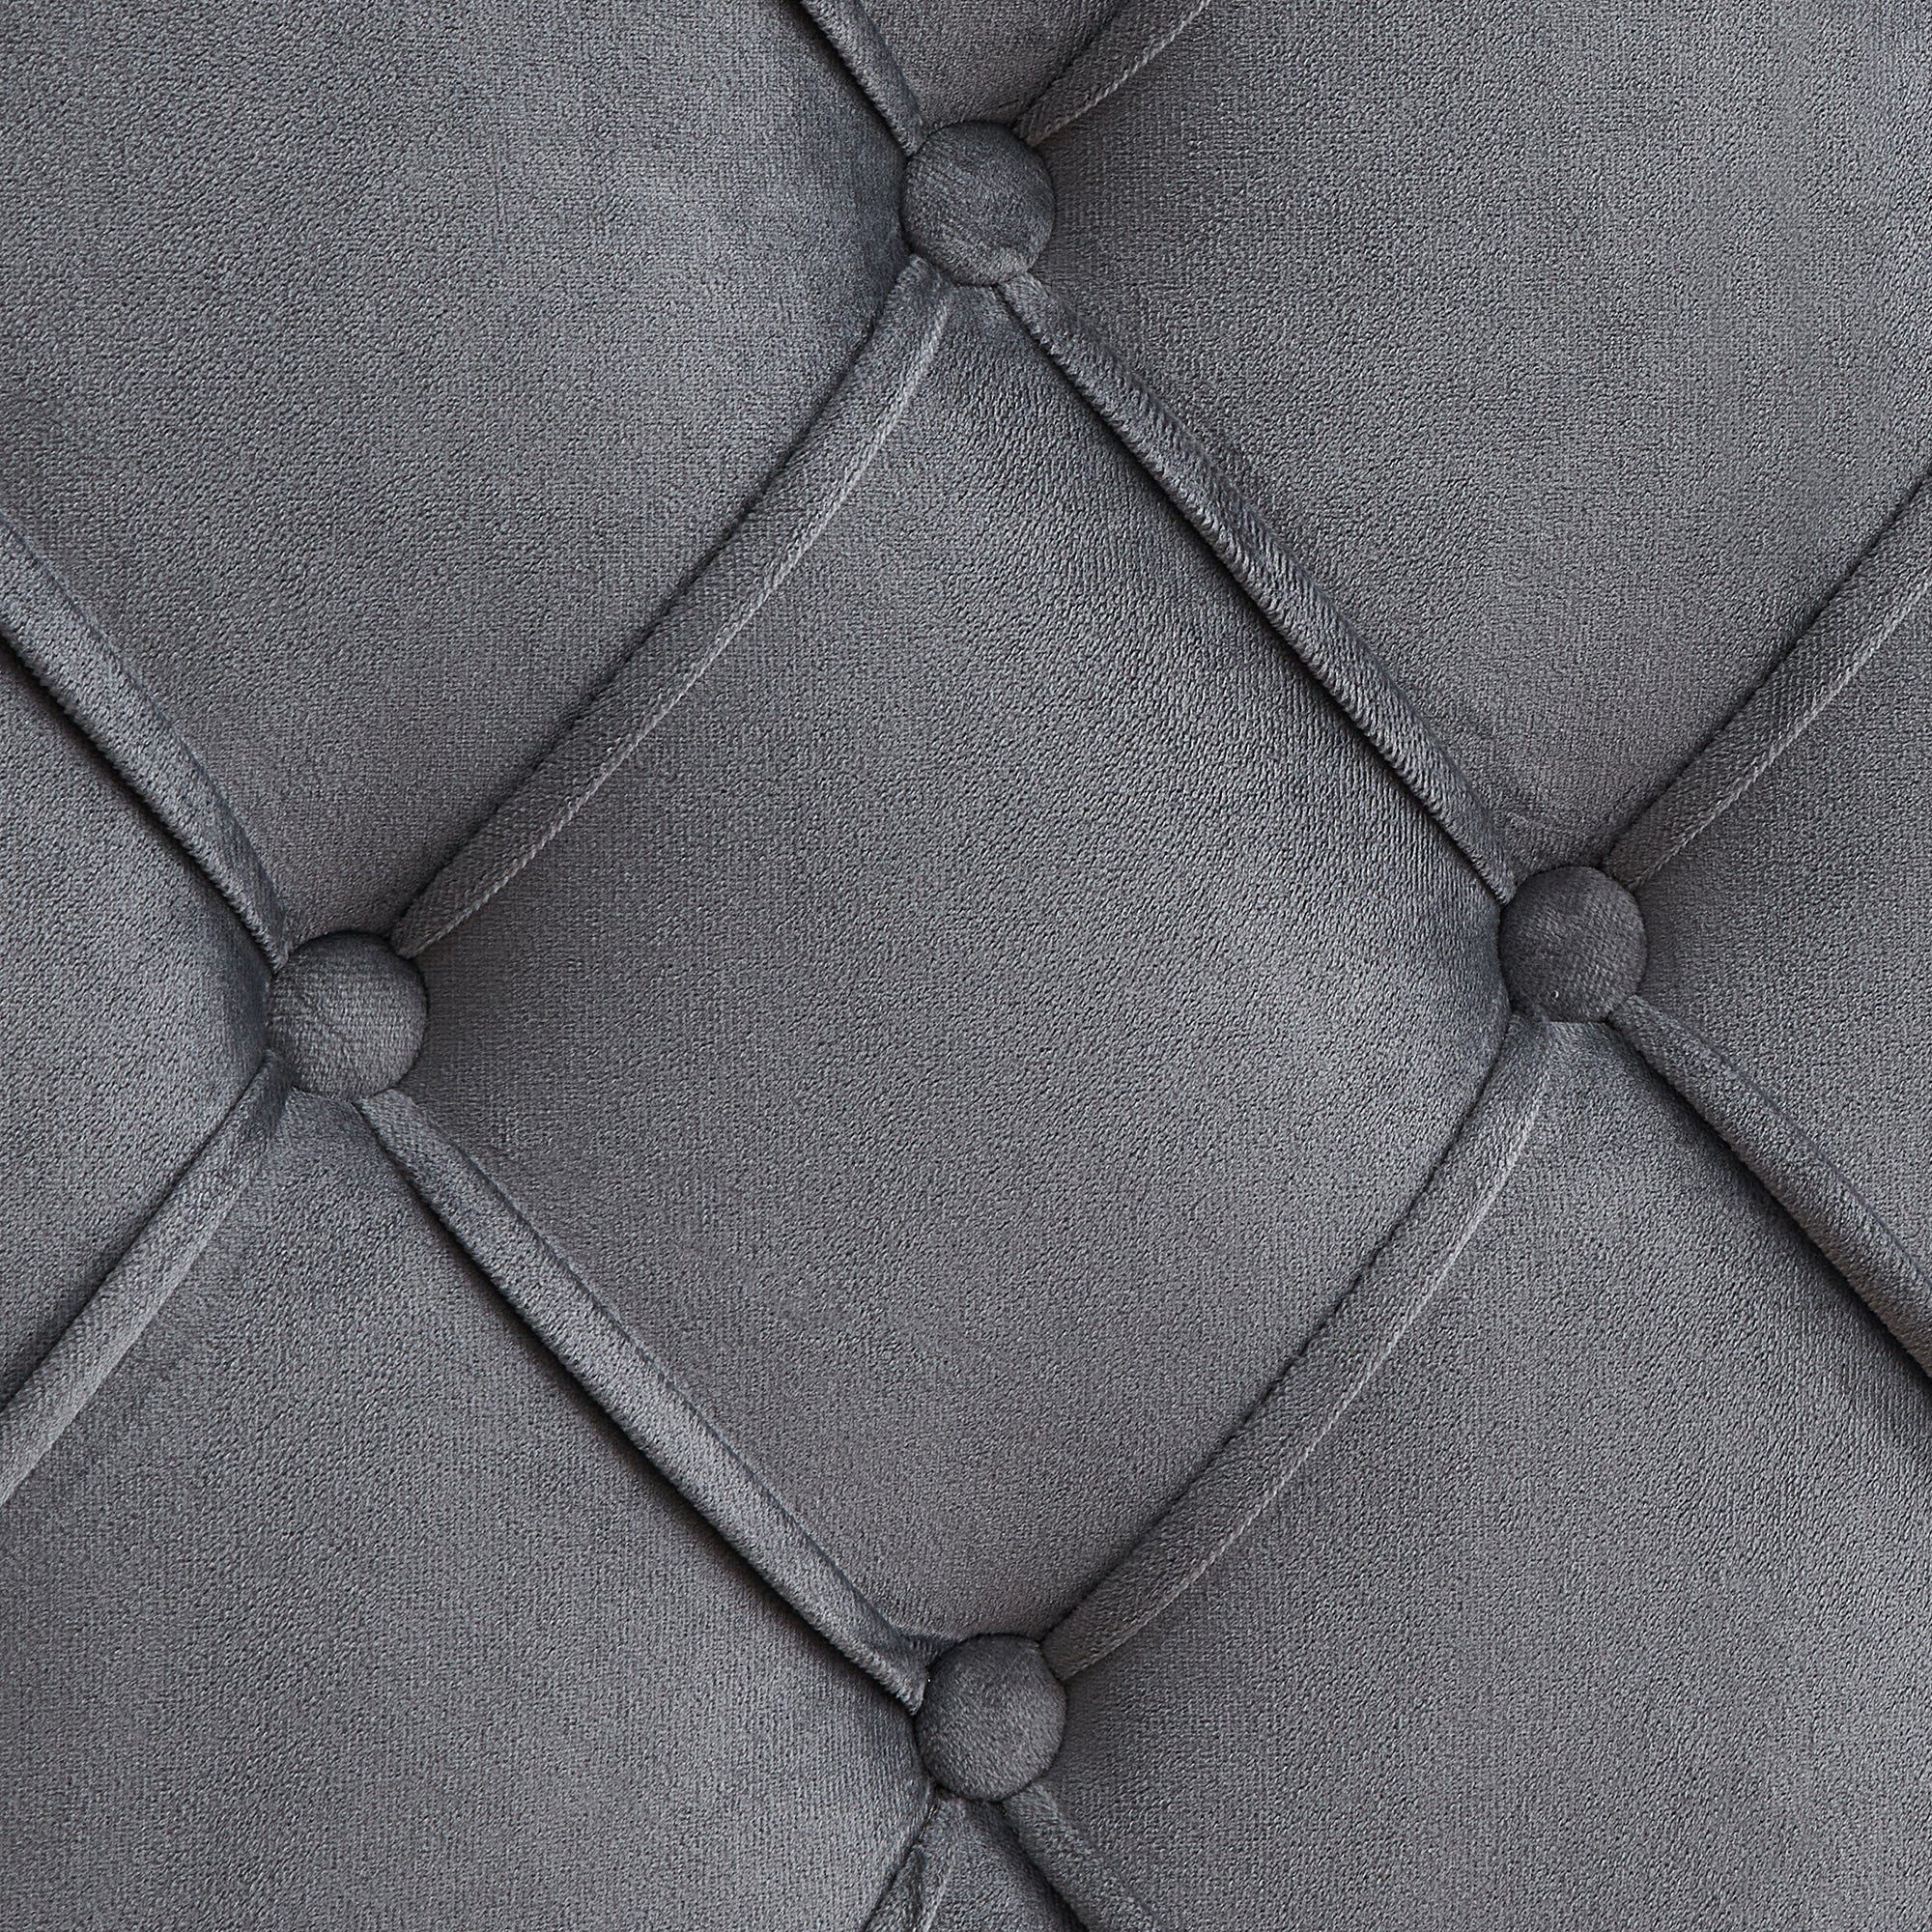 Velvet Button Tufted-Upholstered Bed